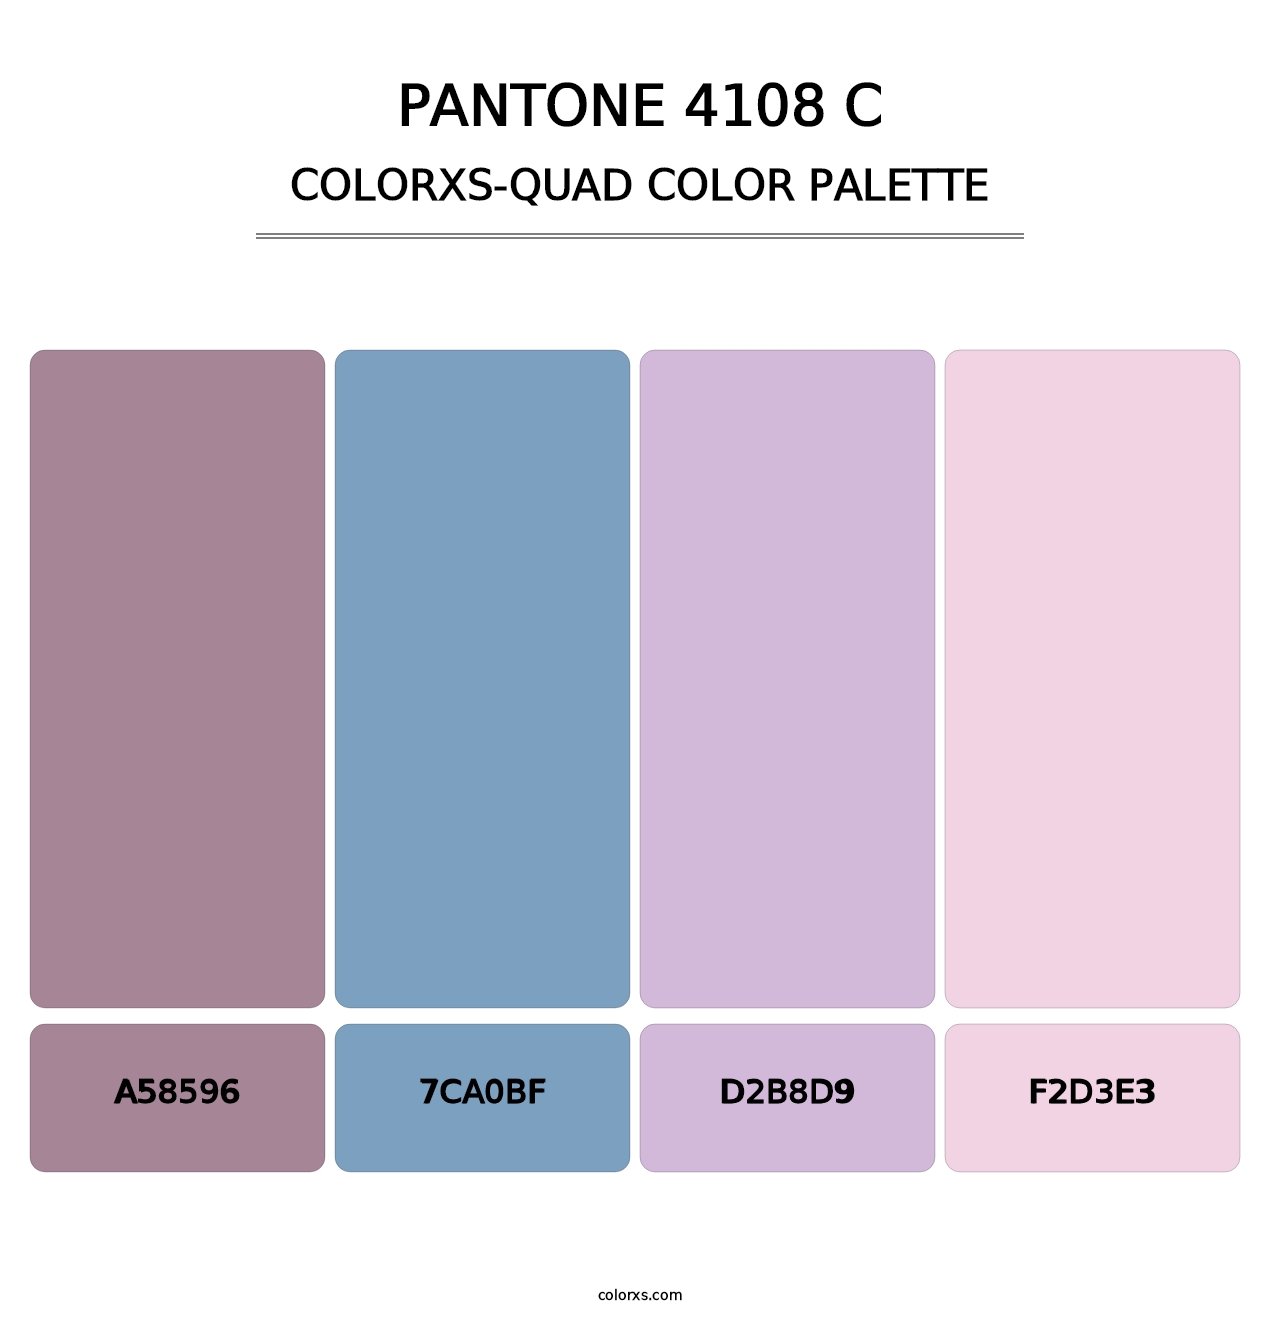 PANTONE 4108 C - Colorxs Quad Palette